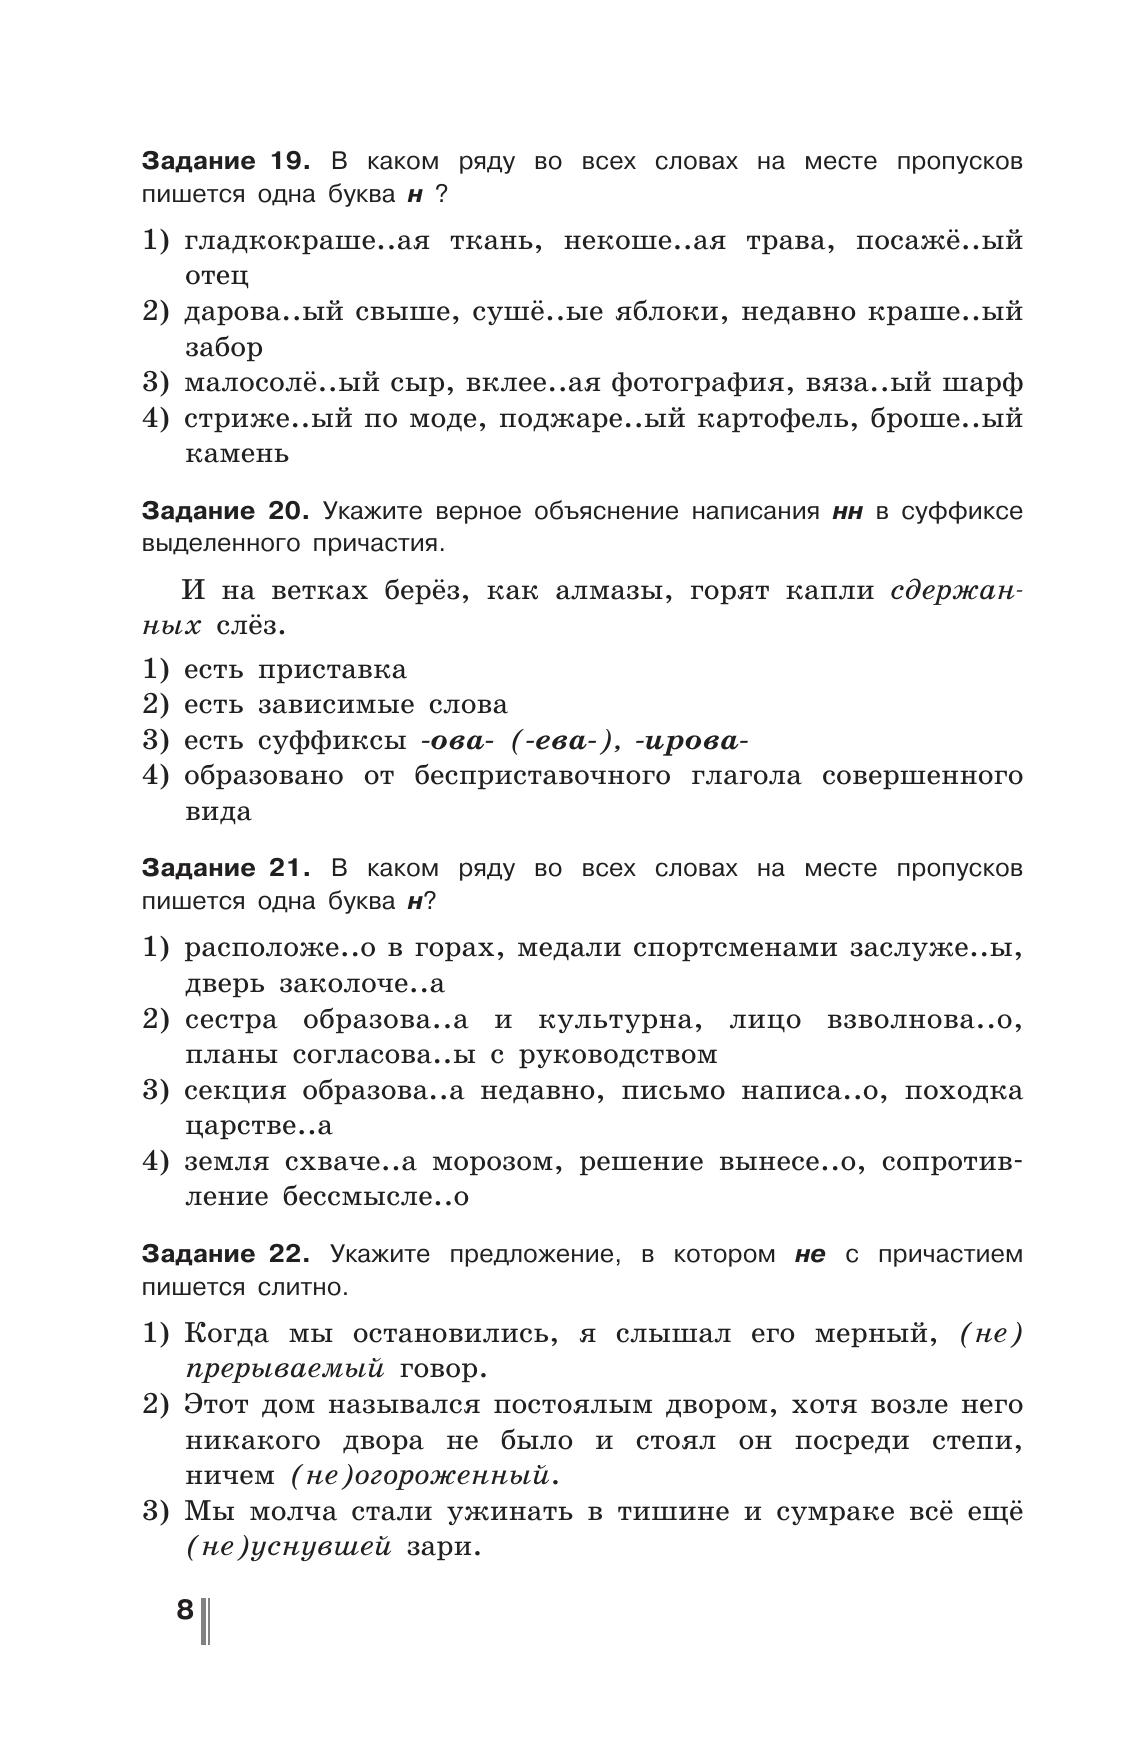 Русский язык. Готовимся к ГИА. Тесты, творческие работы, проекты. 7 класс 3